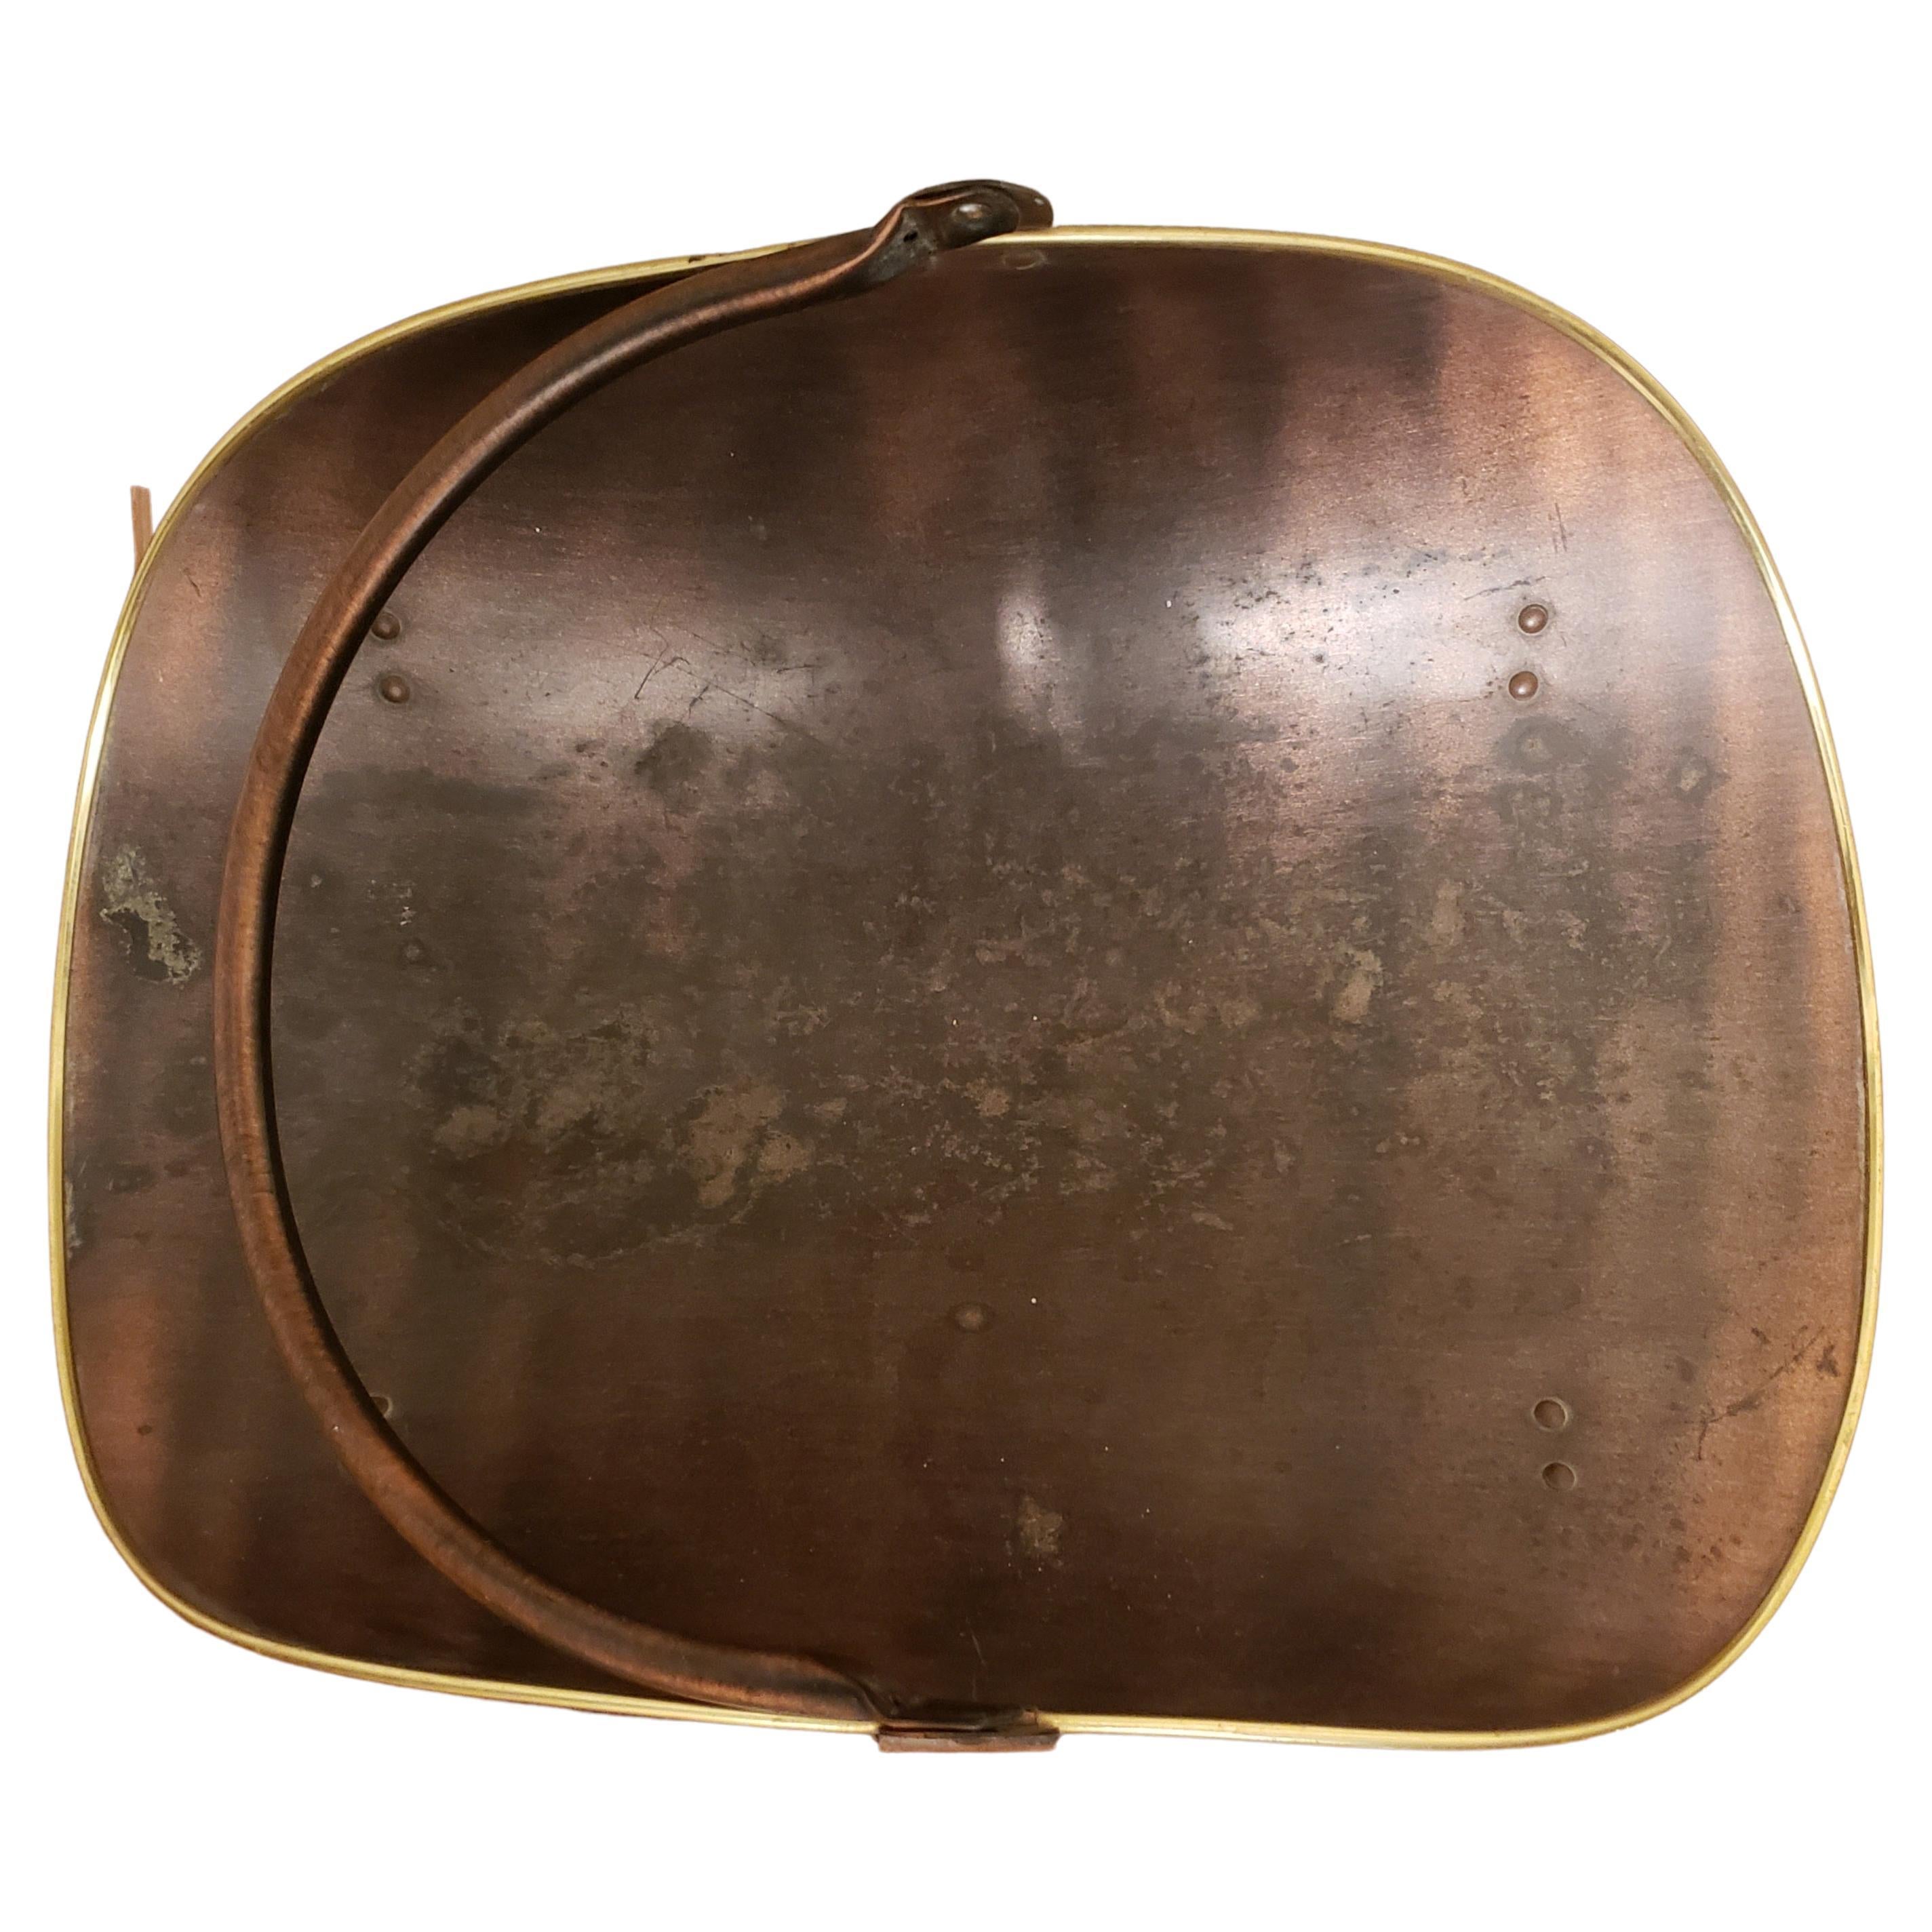 Beautiful vintage copper fireplace log basket/holder.
Measures 20